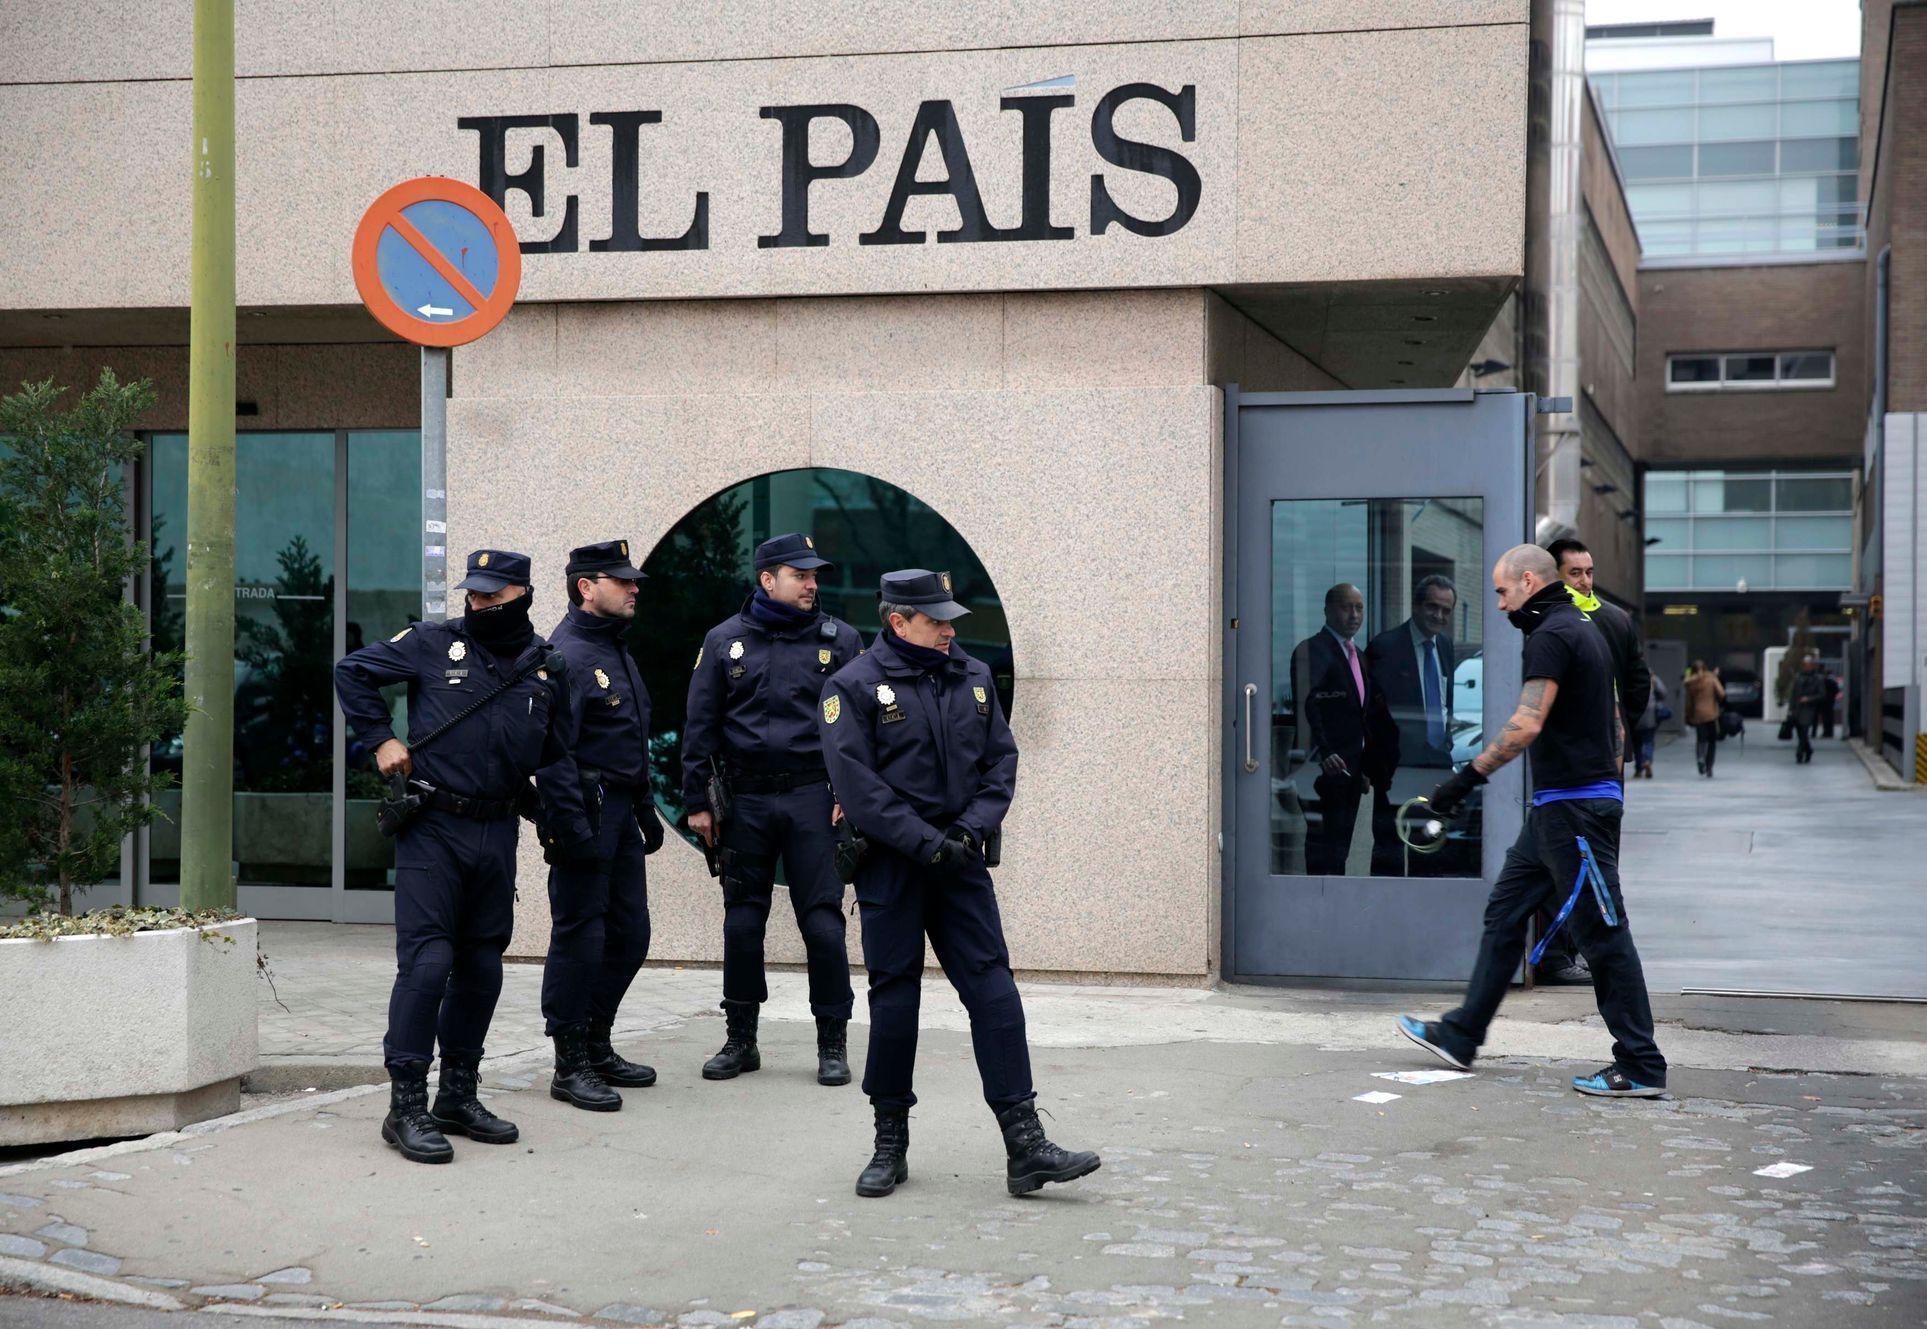 Podklady ke grafice bezpečnostních opatření po Charlie Hebdo - Španělsko